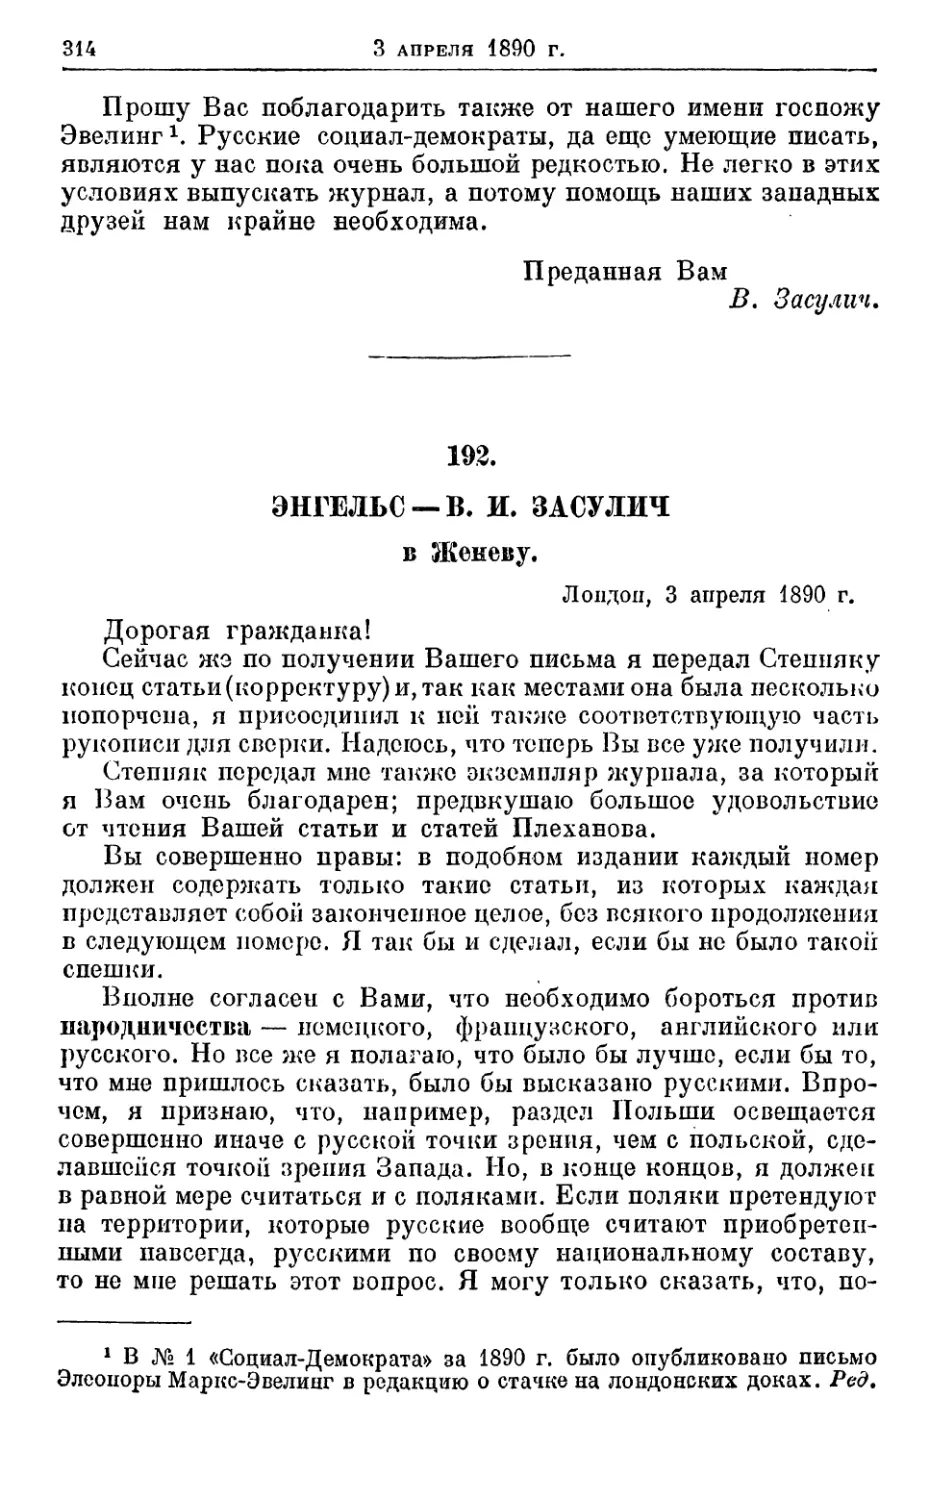 192. Энгельс — В. И. Засулич, 3 апреля 1890г